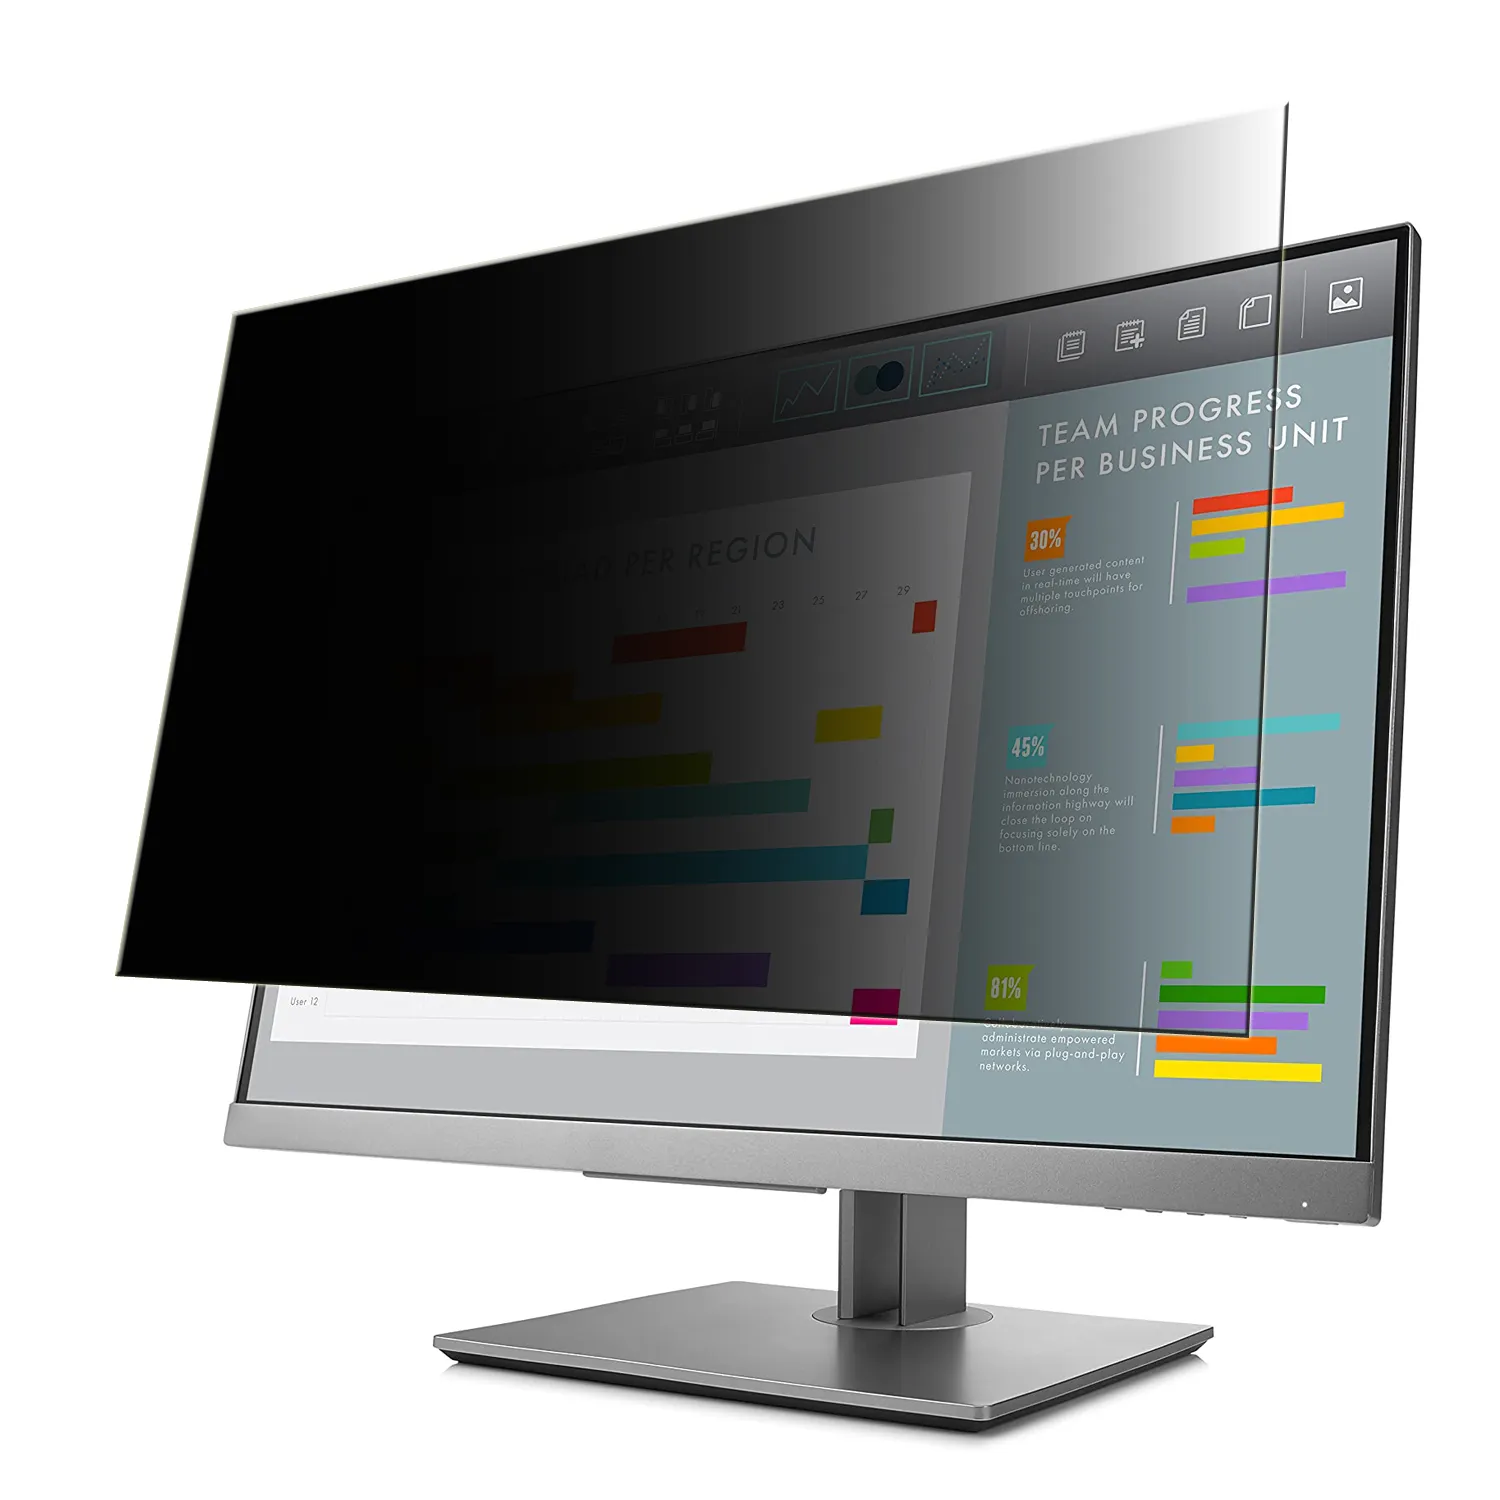 Düşük fiyat parlama önleyici bilgisayar tüm ekran monitörleri için ekran koruyucu mavi işık kesme filtresi koruyucu 10 "-32"